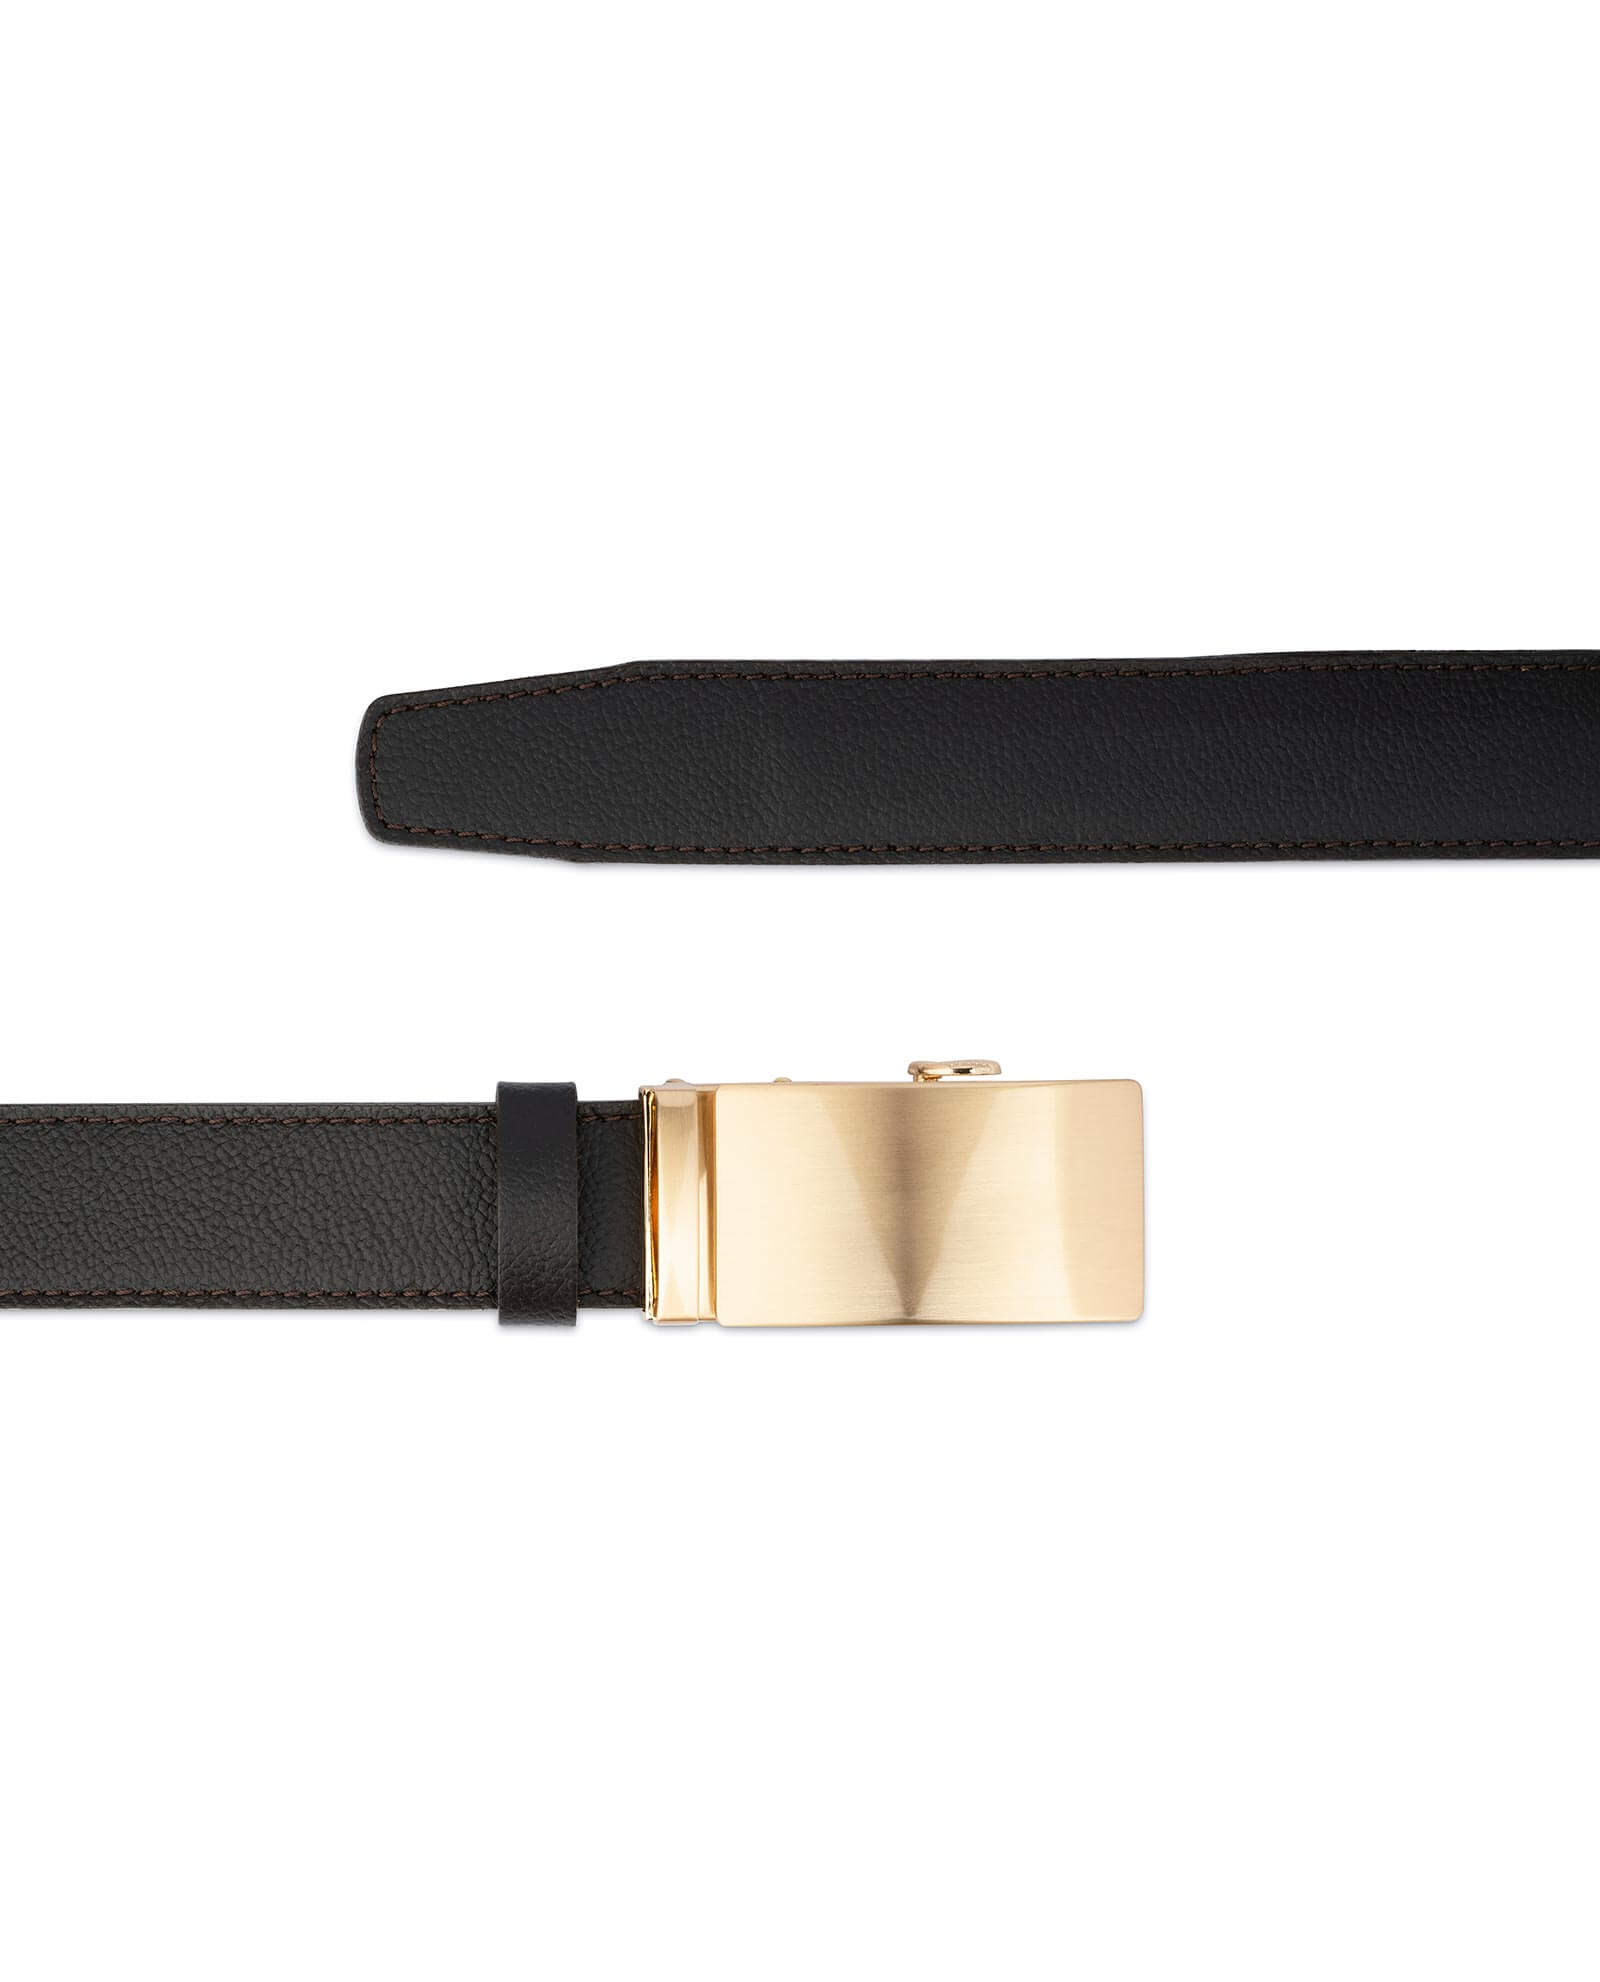 Buy Brown Comfort Click Belt | Gold Buckle | LeatherBeltsOnline.com